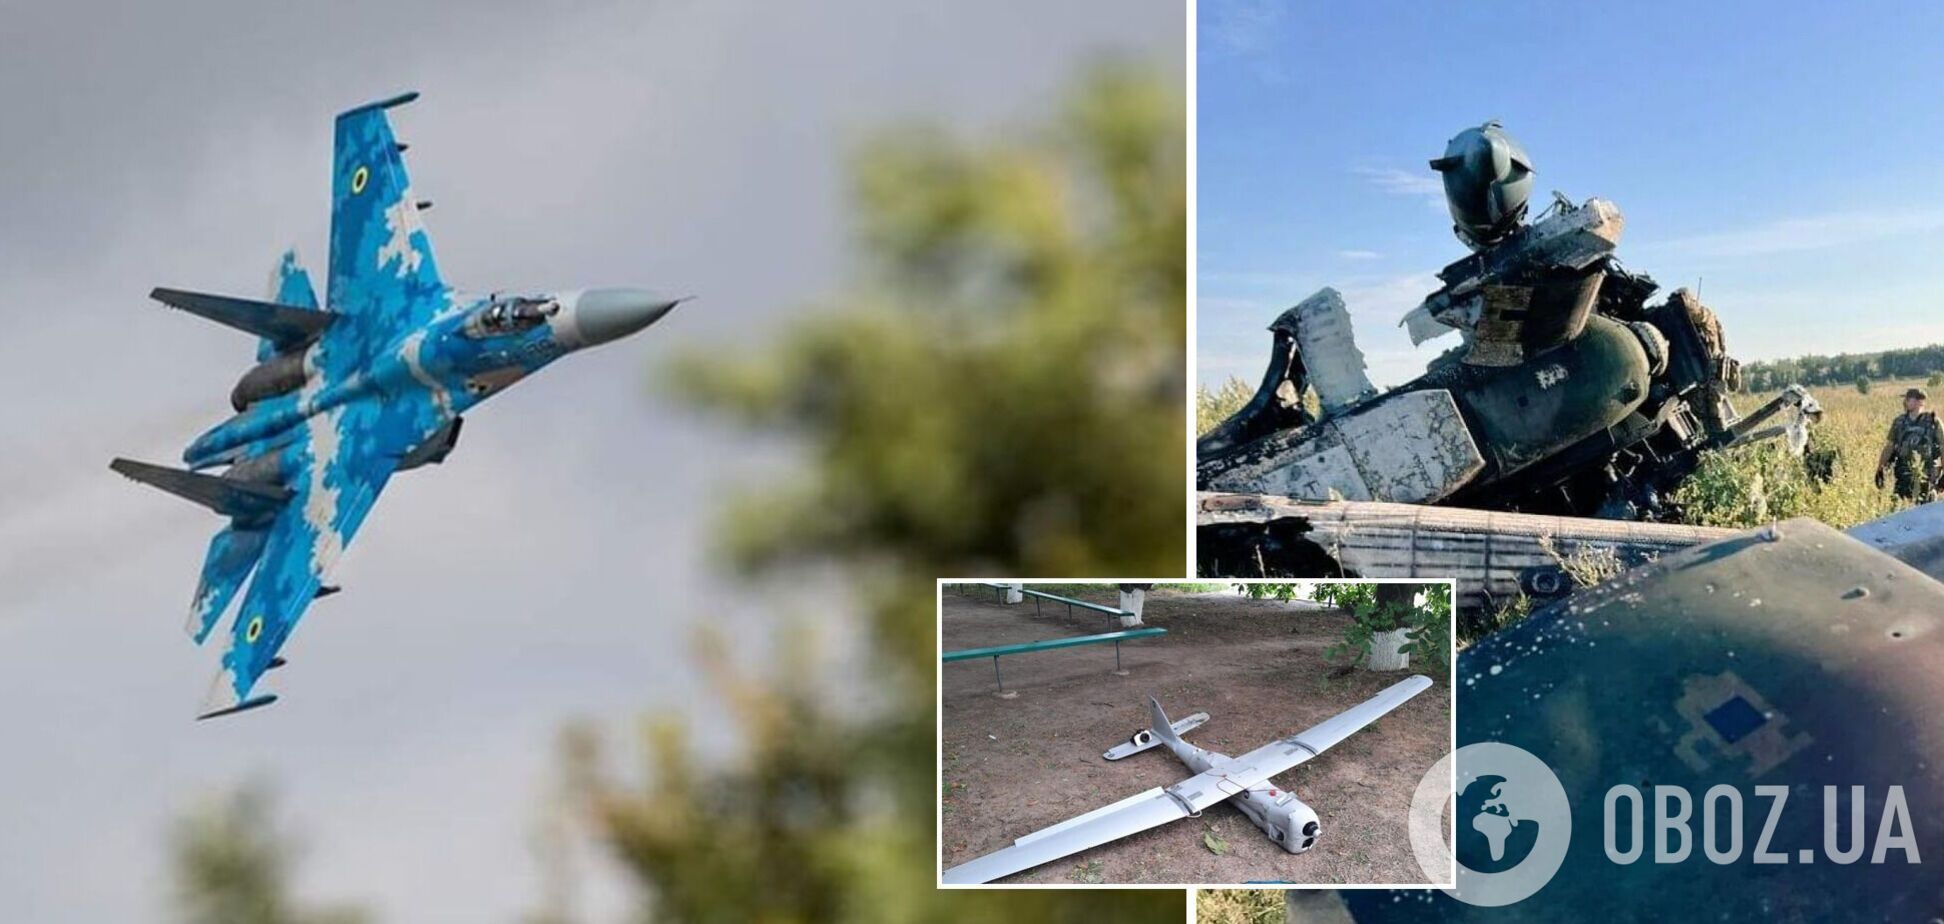 Захисники України за добу знищили по два ворожі літаки Су-25 й вертольоти, п’ять БПЛА